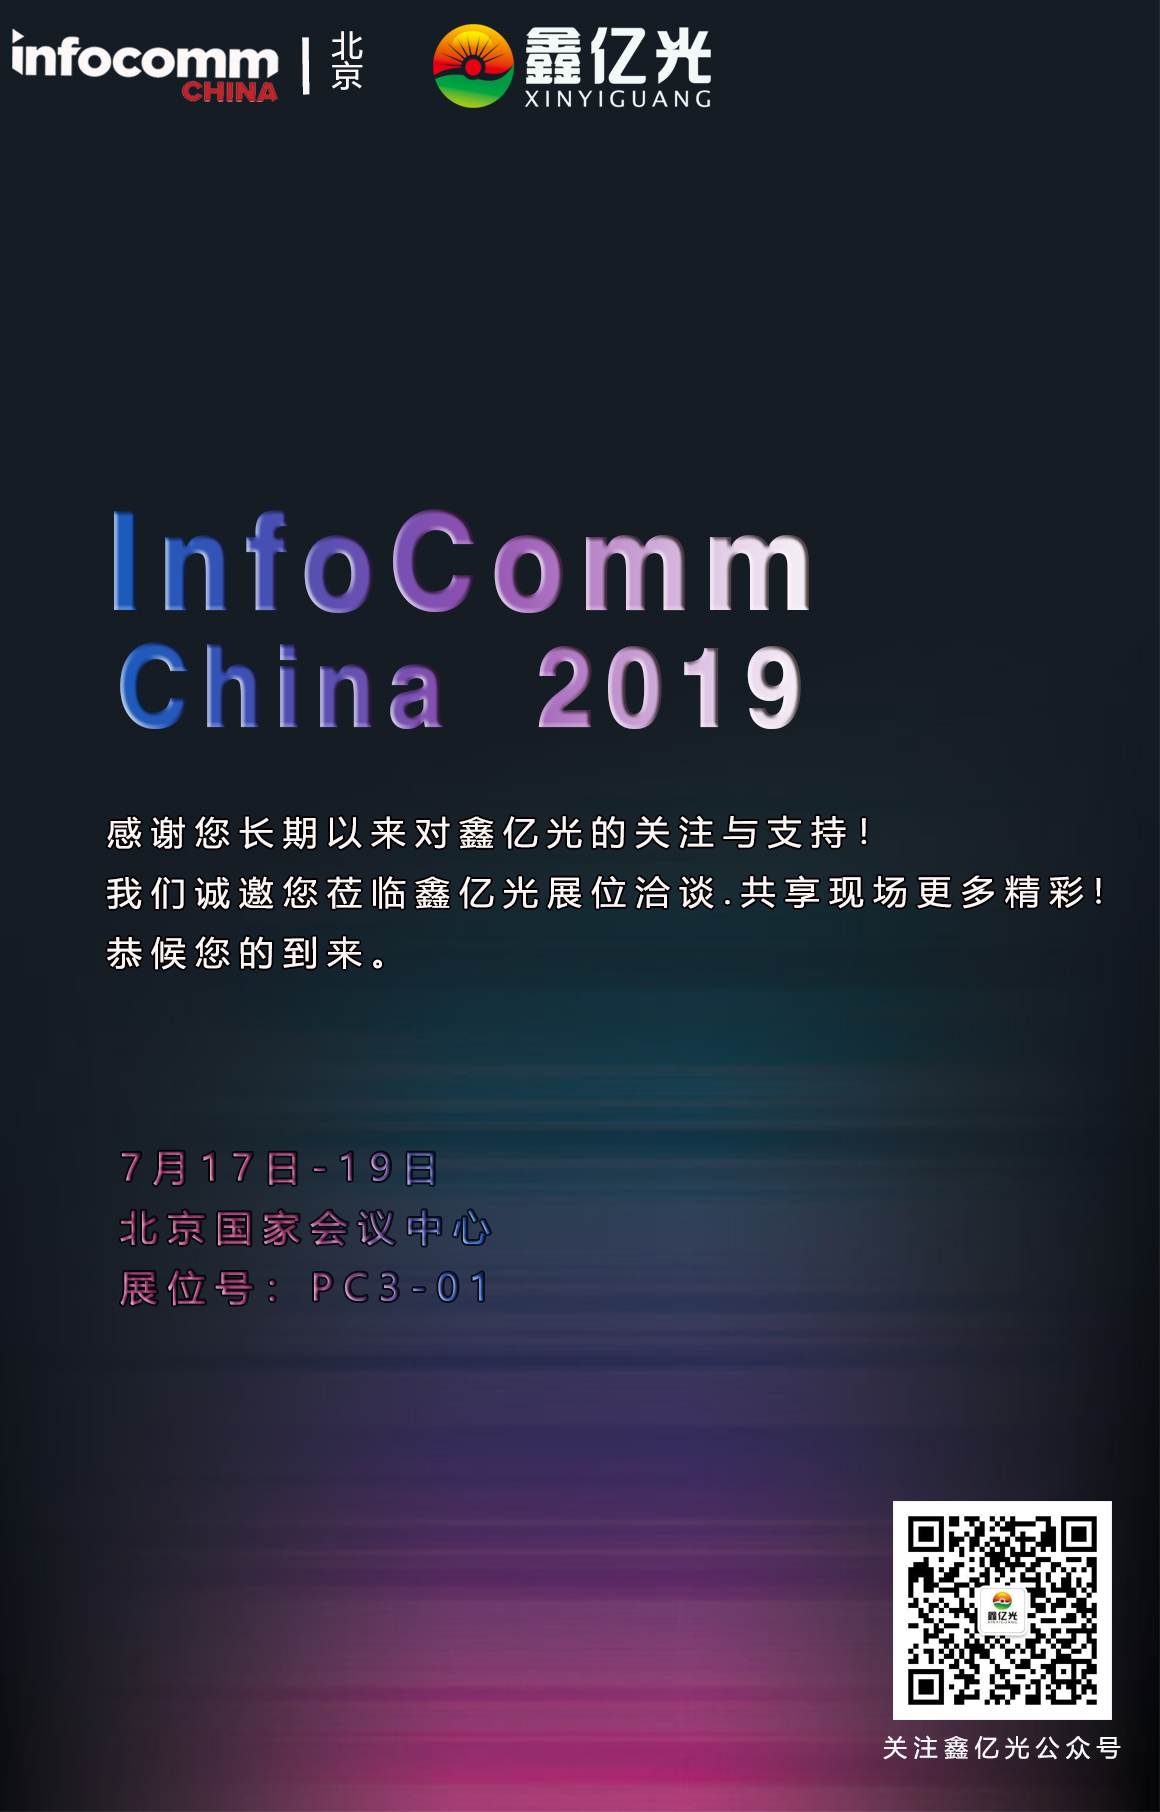 鑫亿光：北京InfoComm China 2019用产品实力一展品牌风采